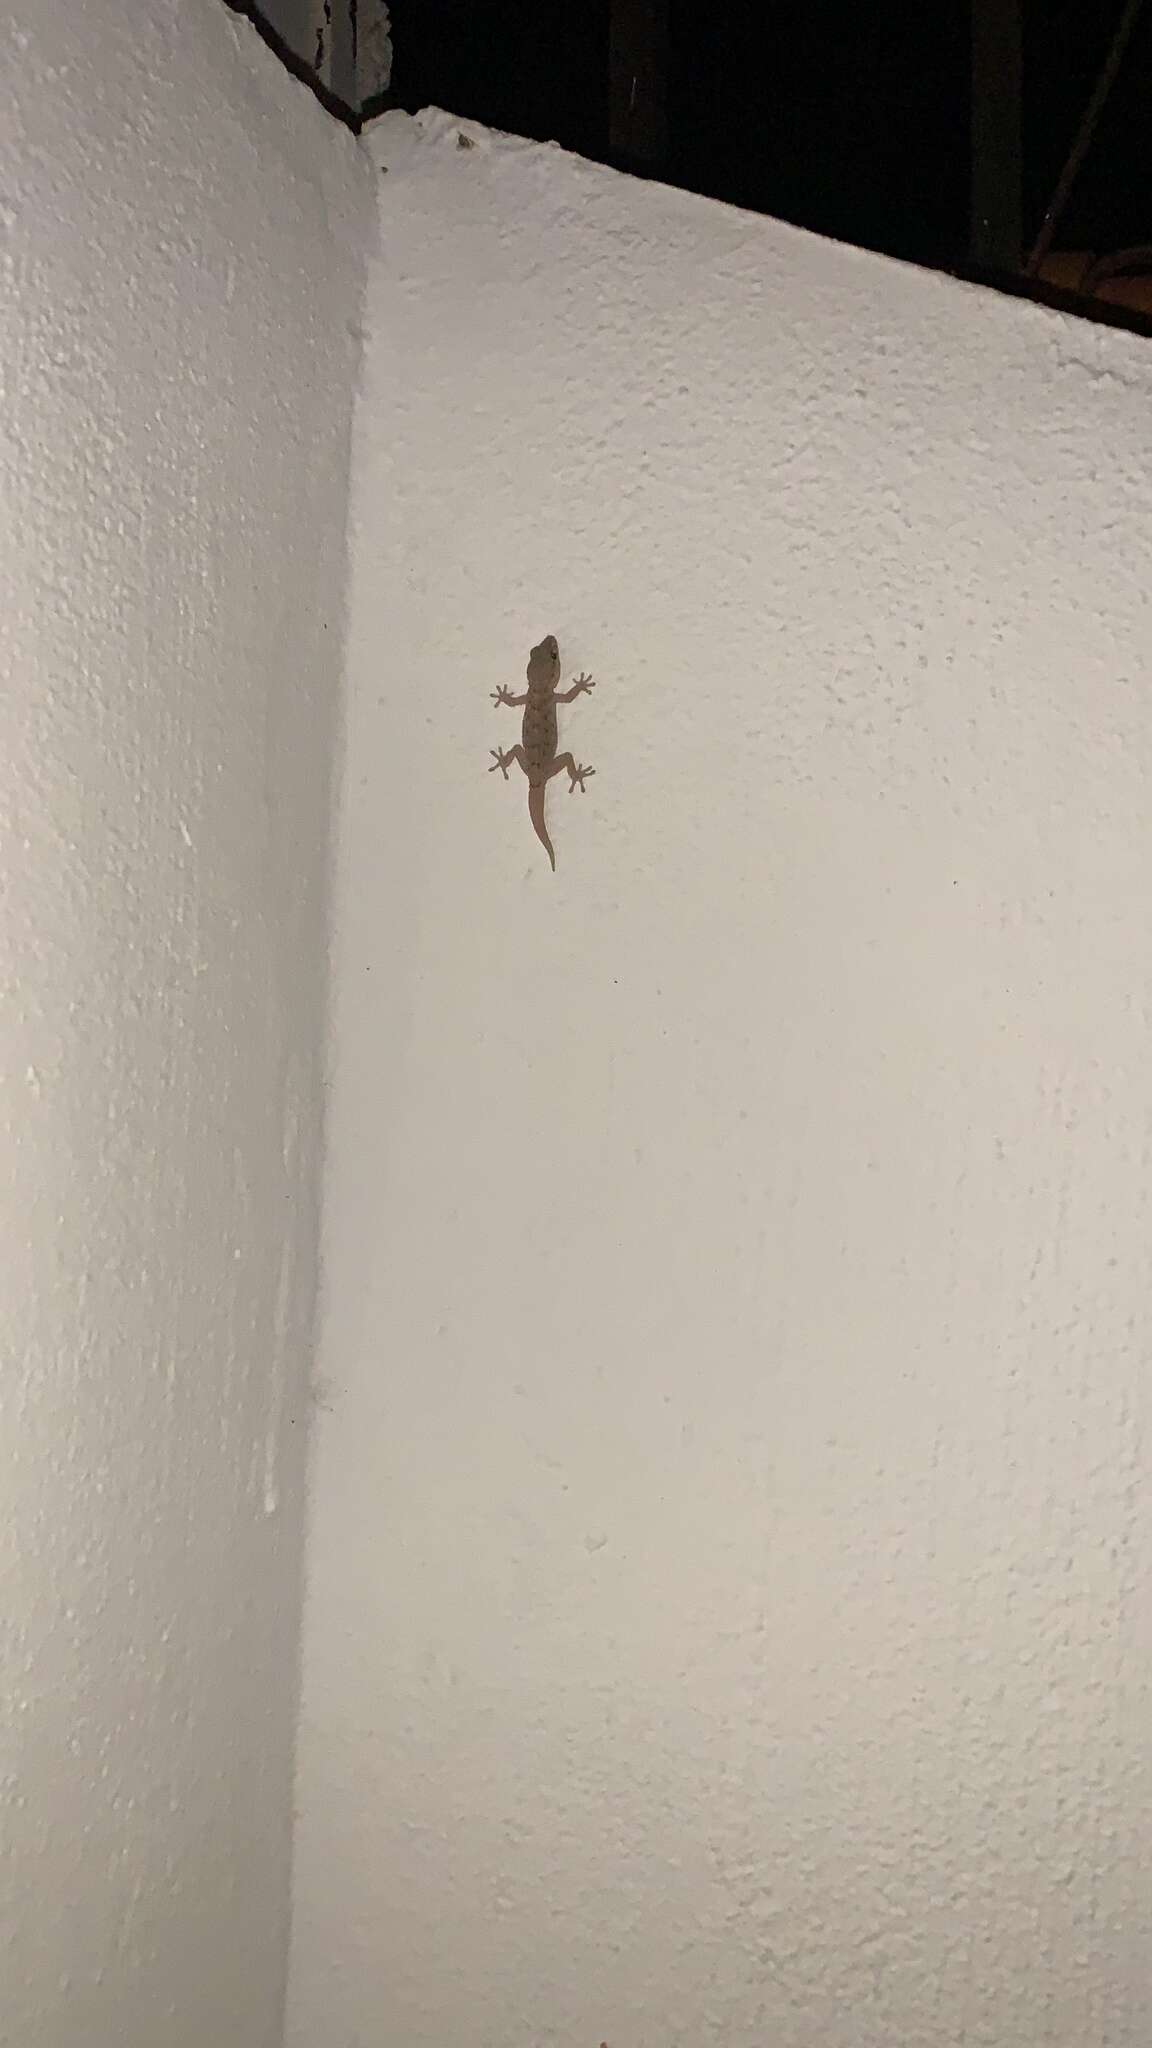 Image of Tenerife Gecko